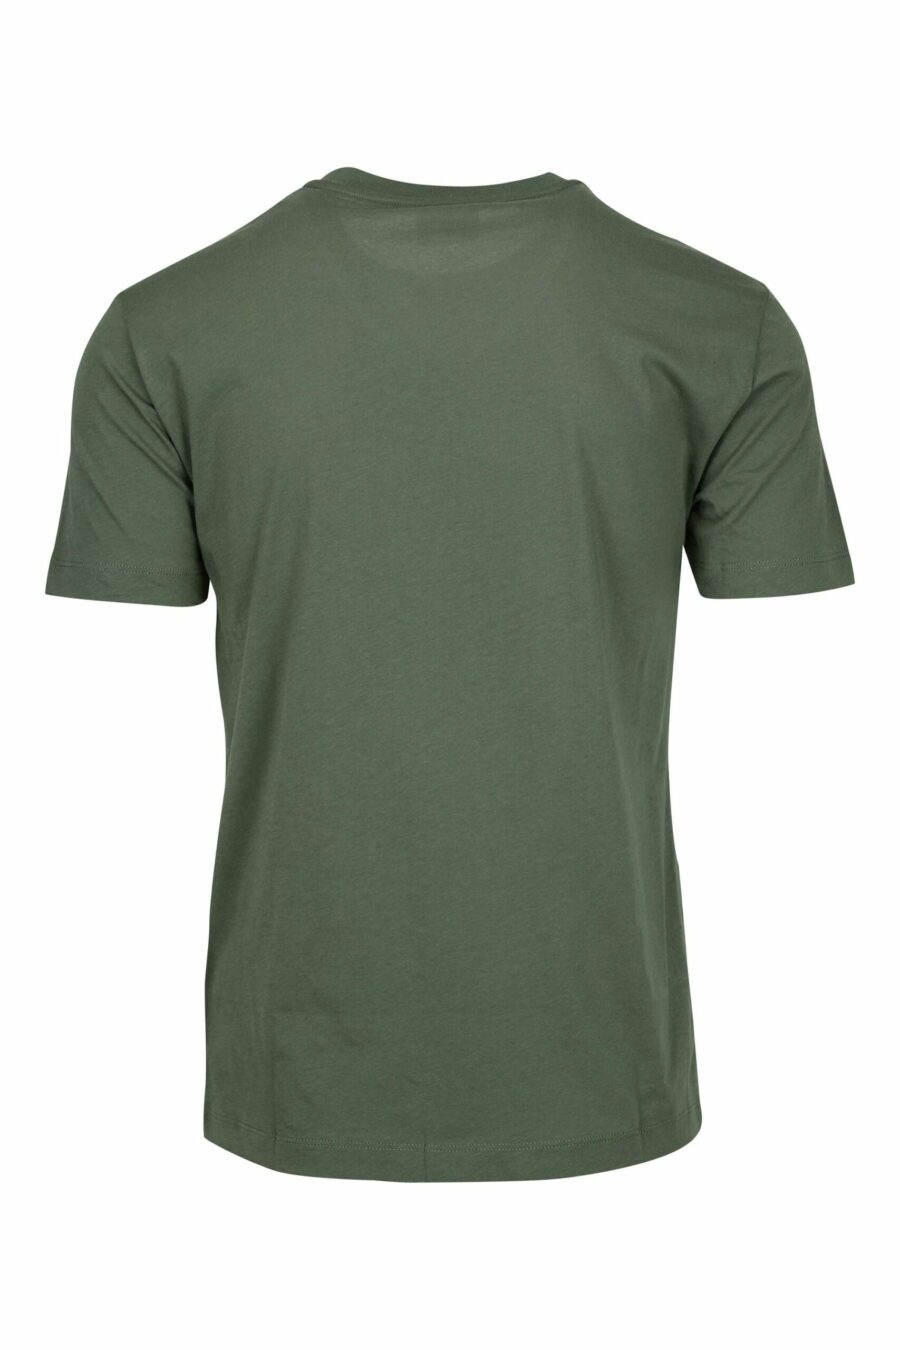 Grünes T-Shirt mit Farbverlauf "lux identity" maxilogo - 8058947508334 1 skaliert